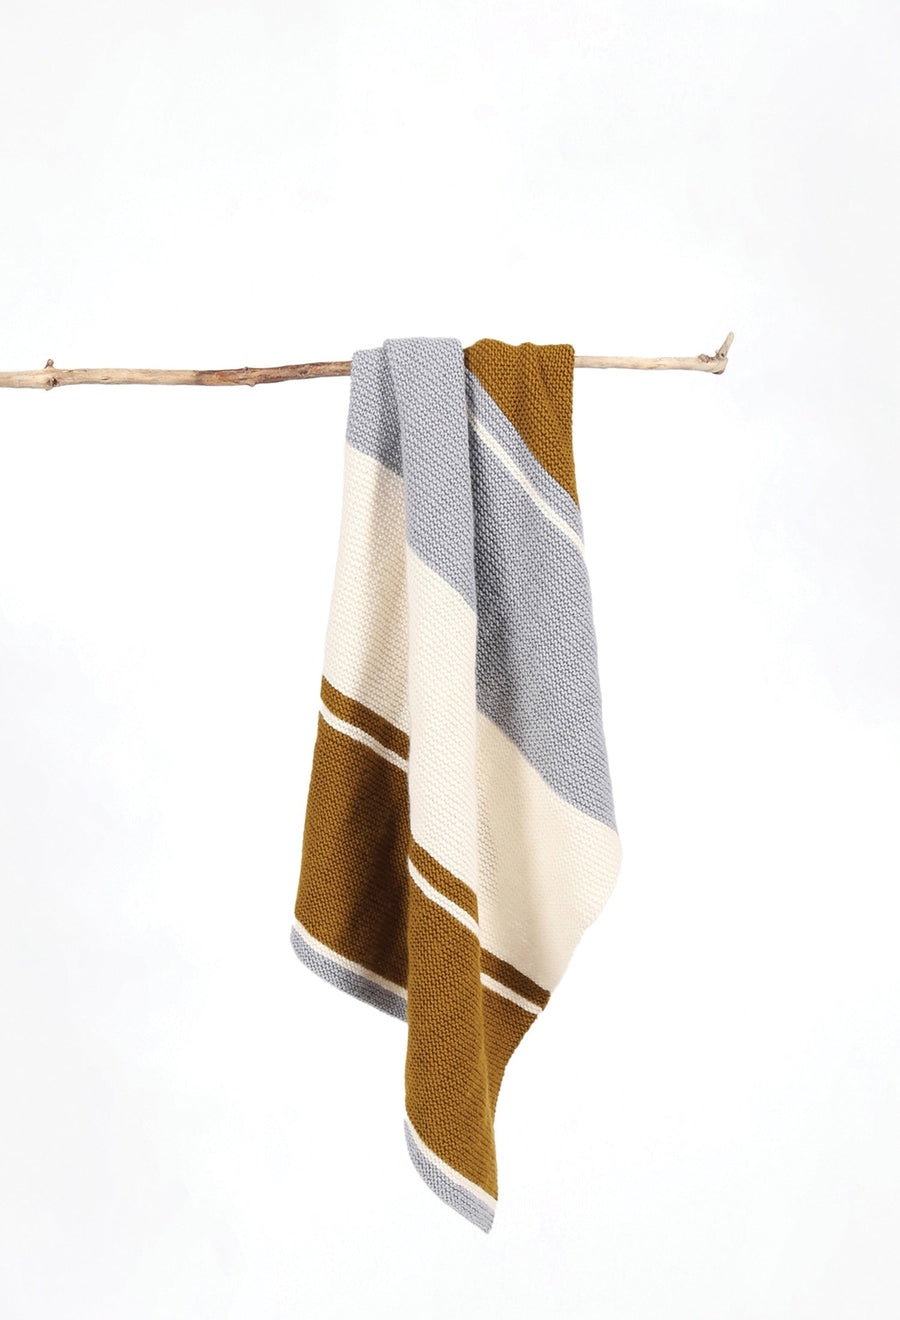 Walter Striped Blanket Knitting Pattern - FREE PDF